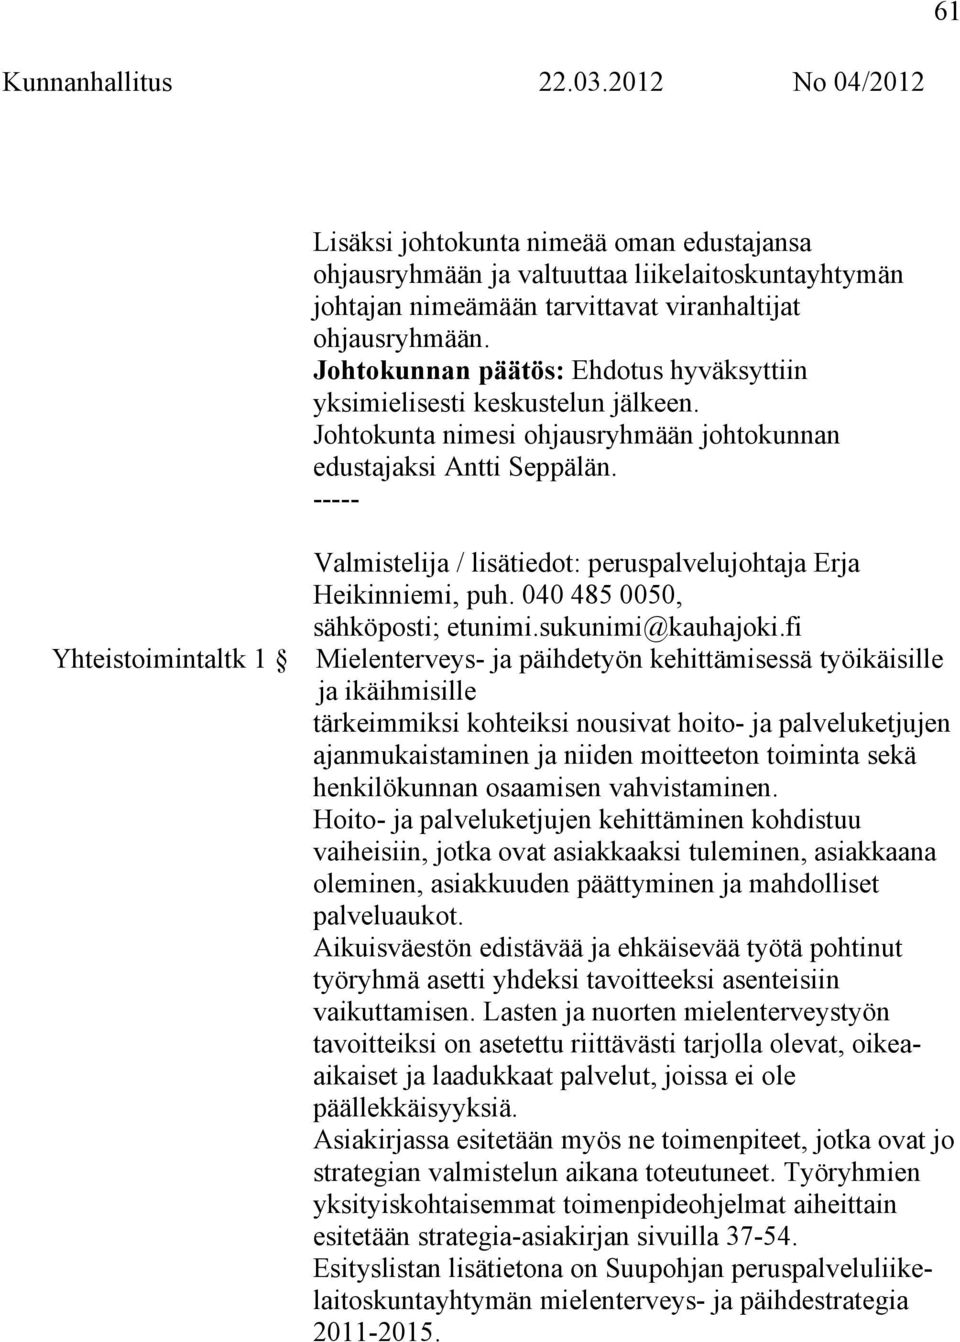 ----- Valmistelija / lisätiedot: peruspalvelujohtaja Erja Heikinniemi, puh. 040 485 0050, sähköposti; etunimi.sukunimi@kauhajoki.